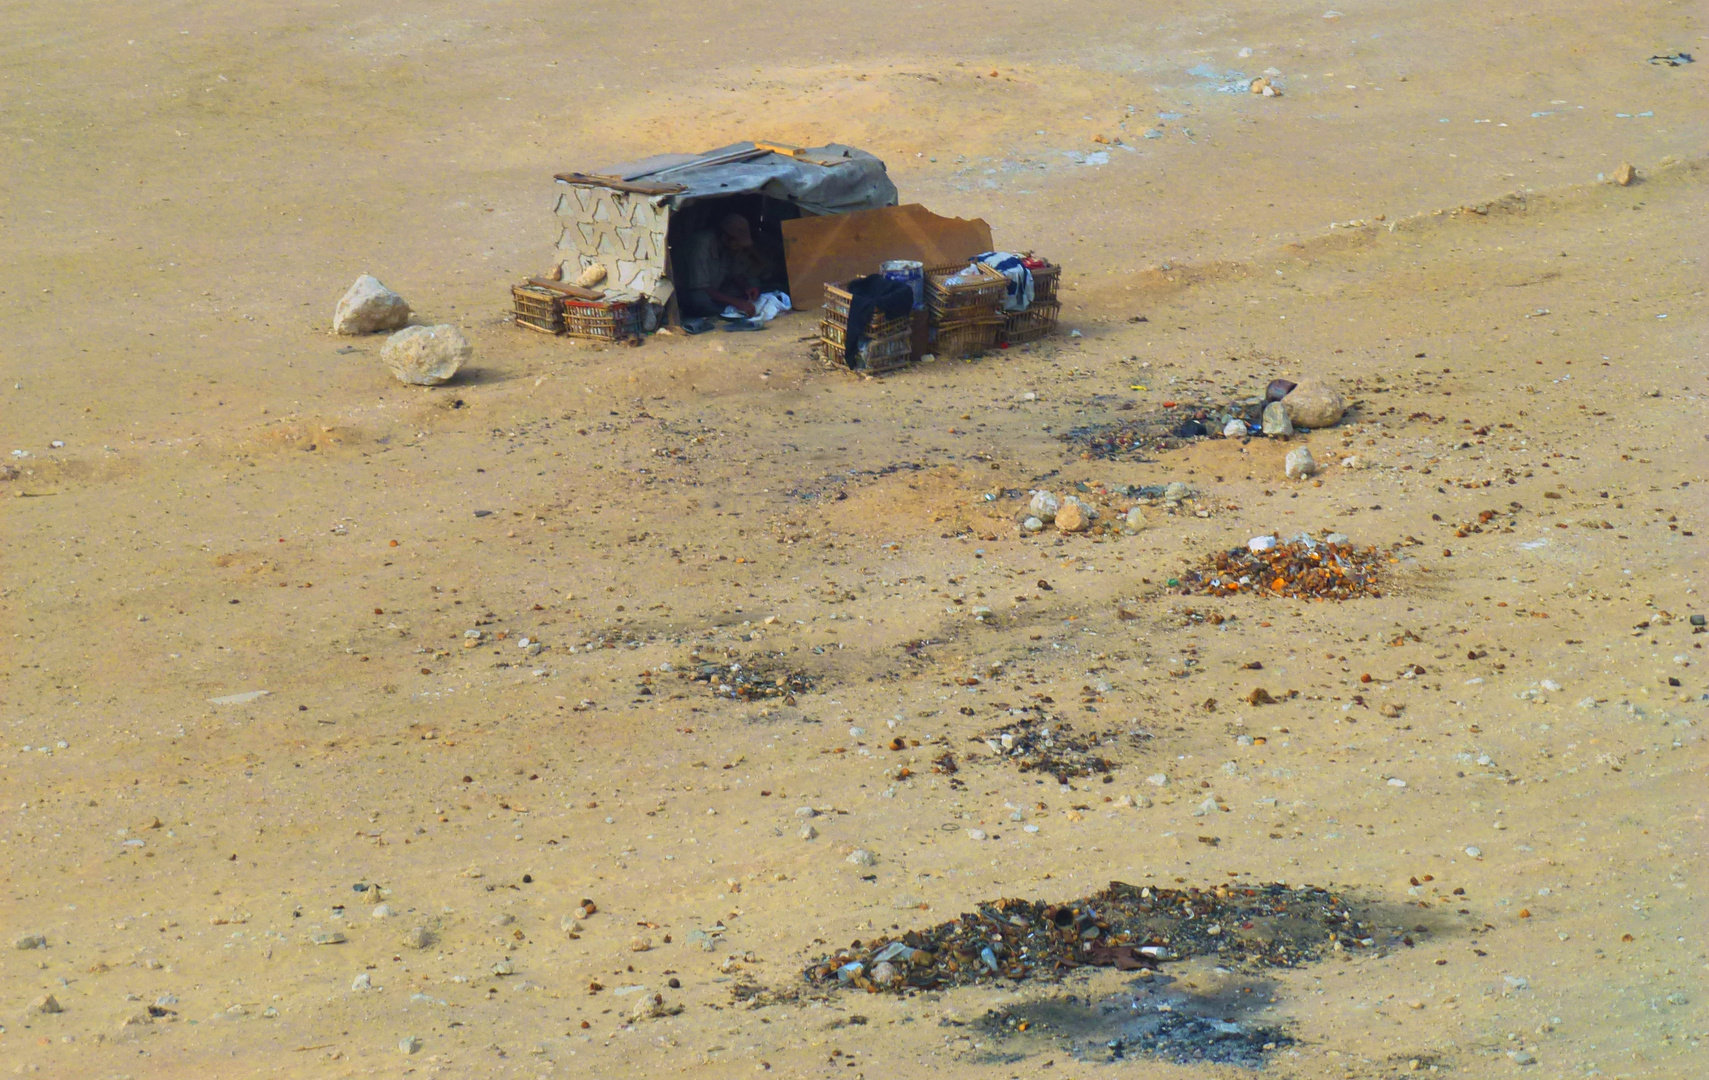 Einpersonenbehausung in einer vermüllten Wüste in Ägypten